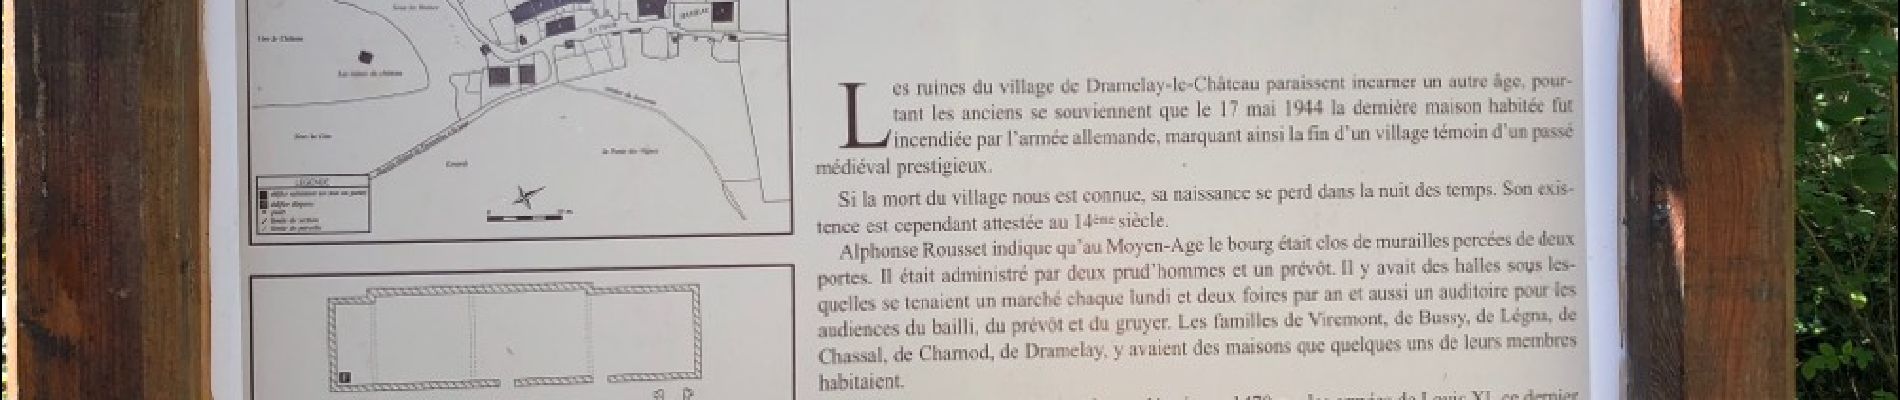 Randonnée Marche Montlainsia - Grange de Dessia - la tour de Dramelay - Photo